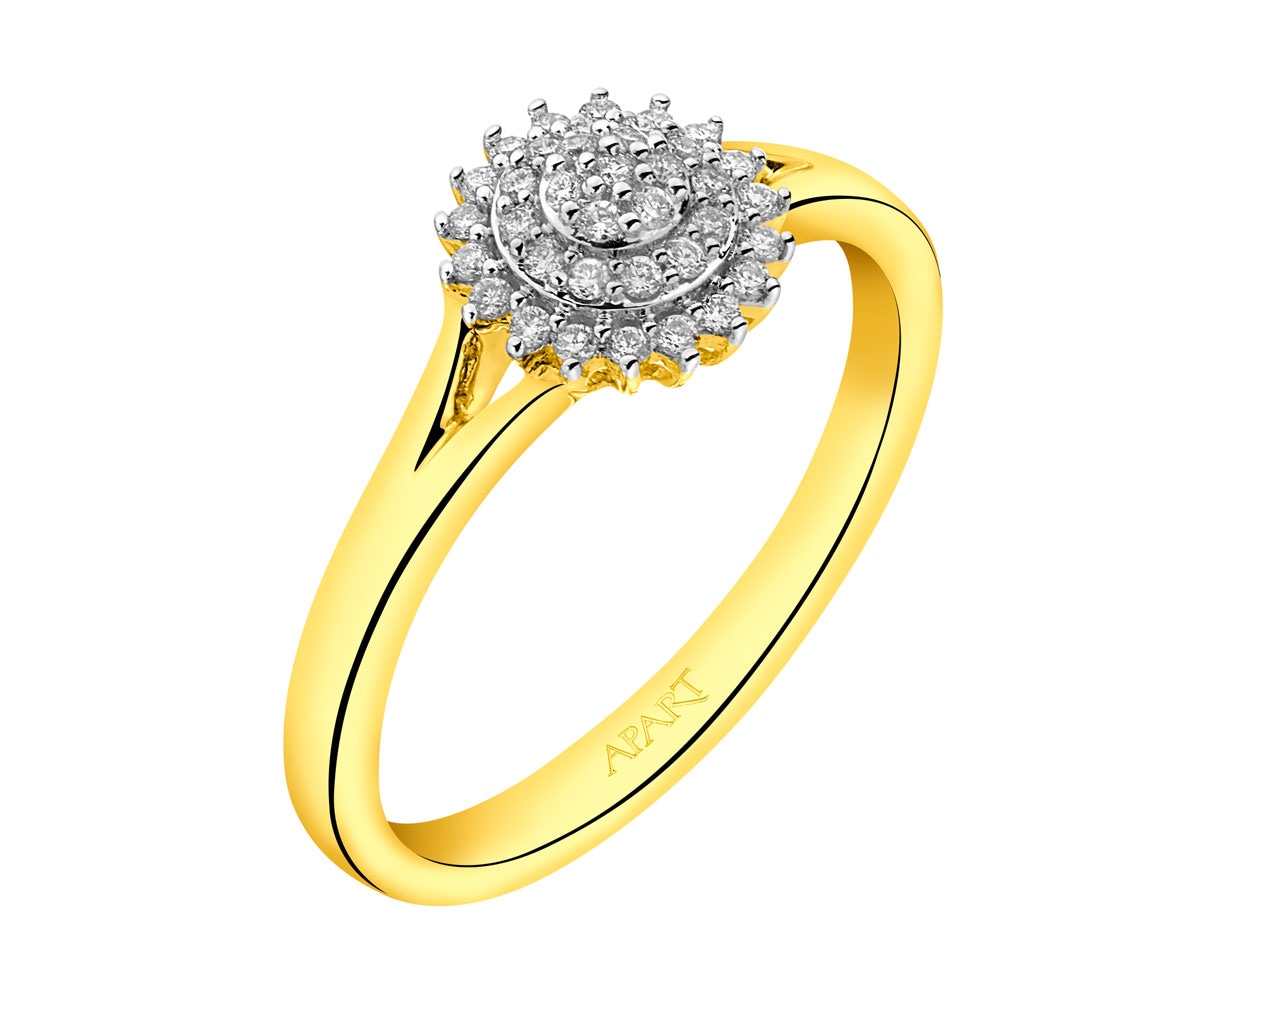 Prsten ze žlutého zlata s diamanty  0,15 ct - ryzost 585